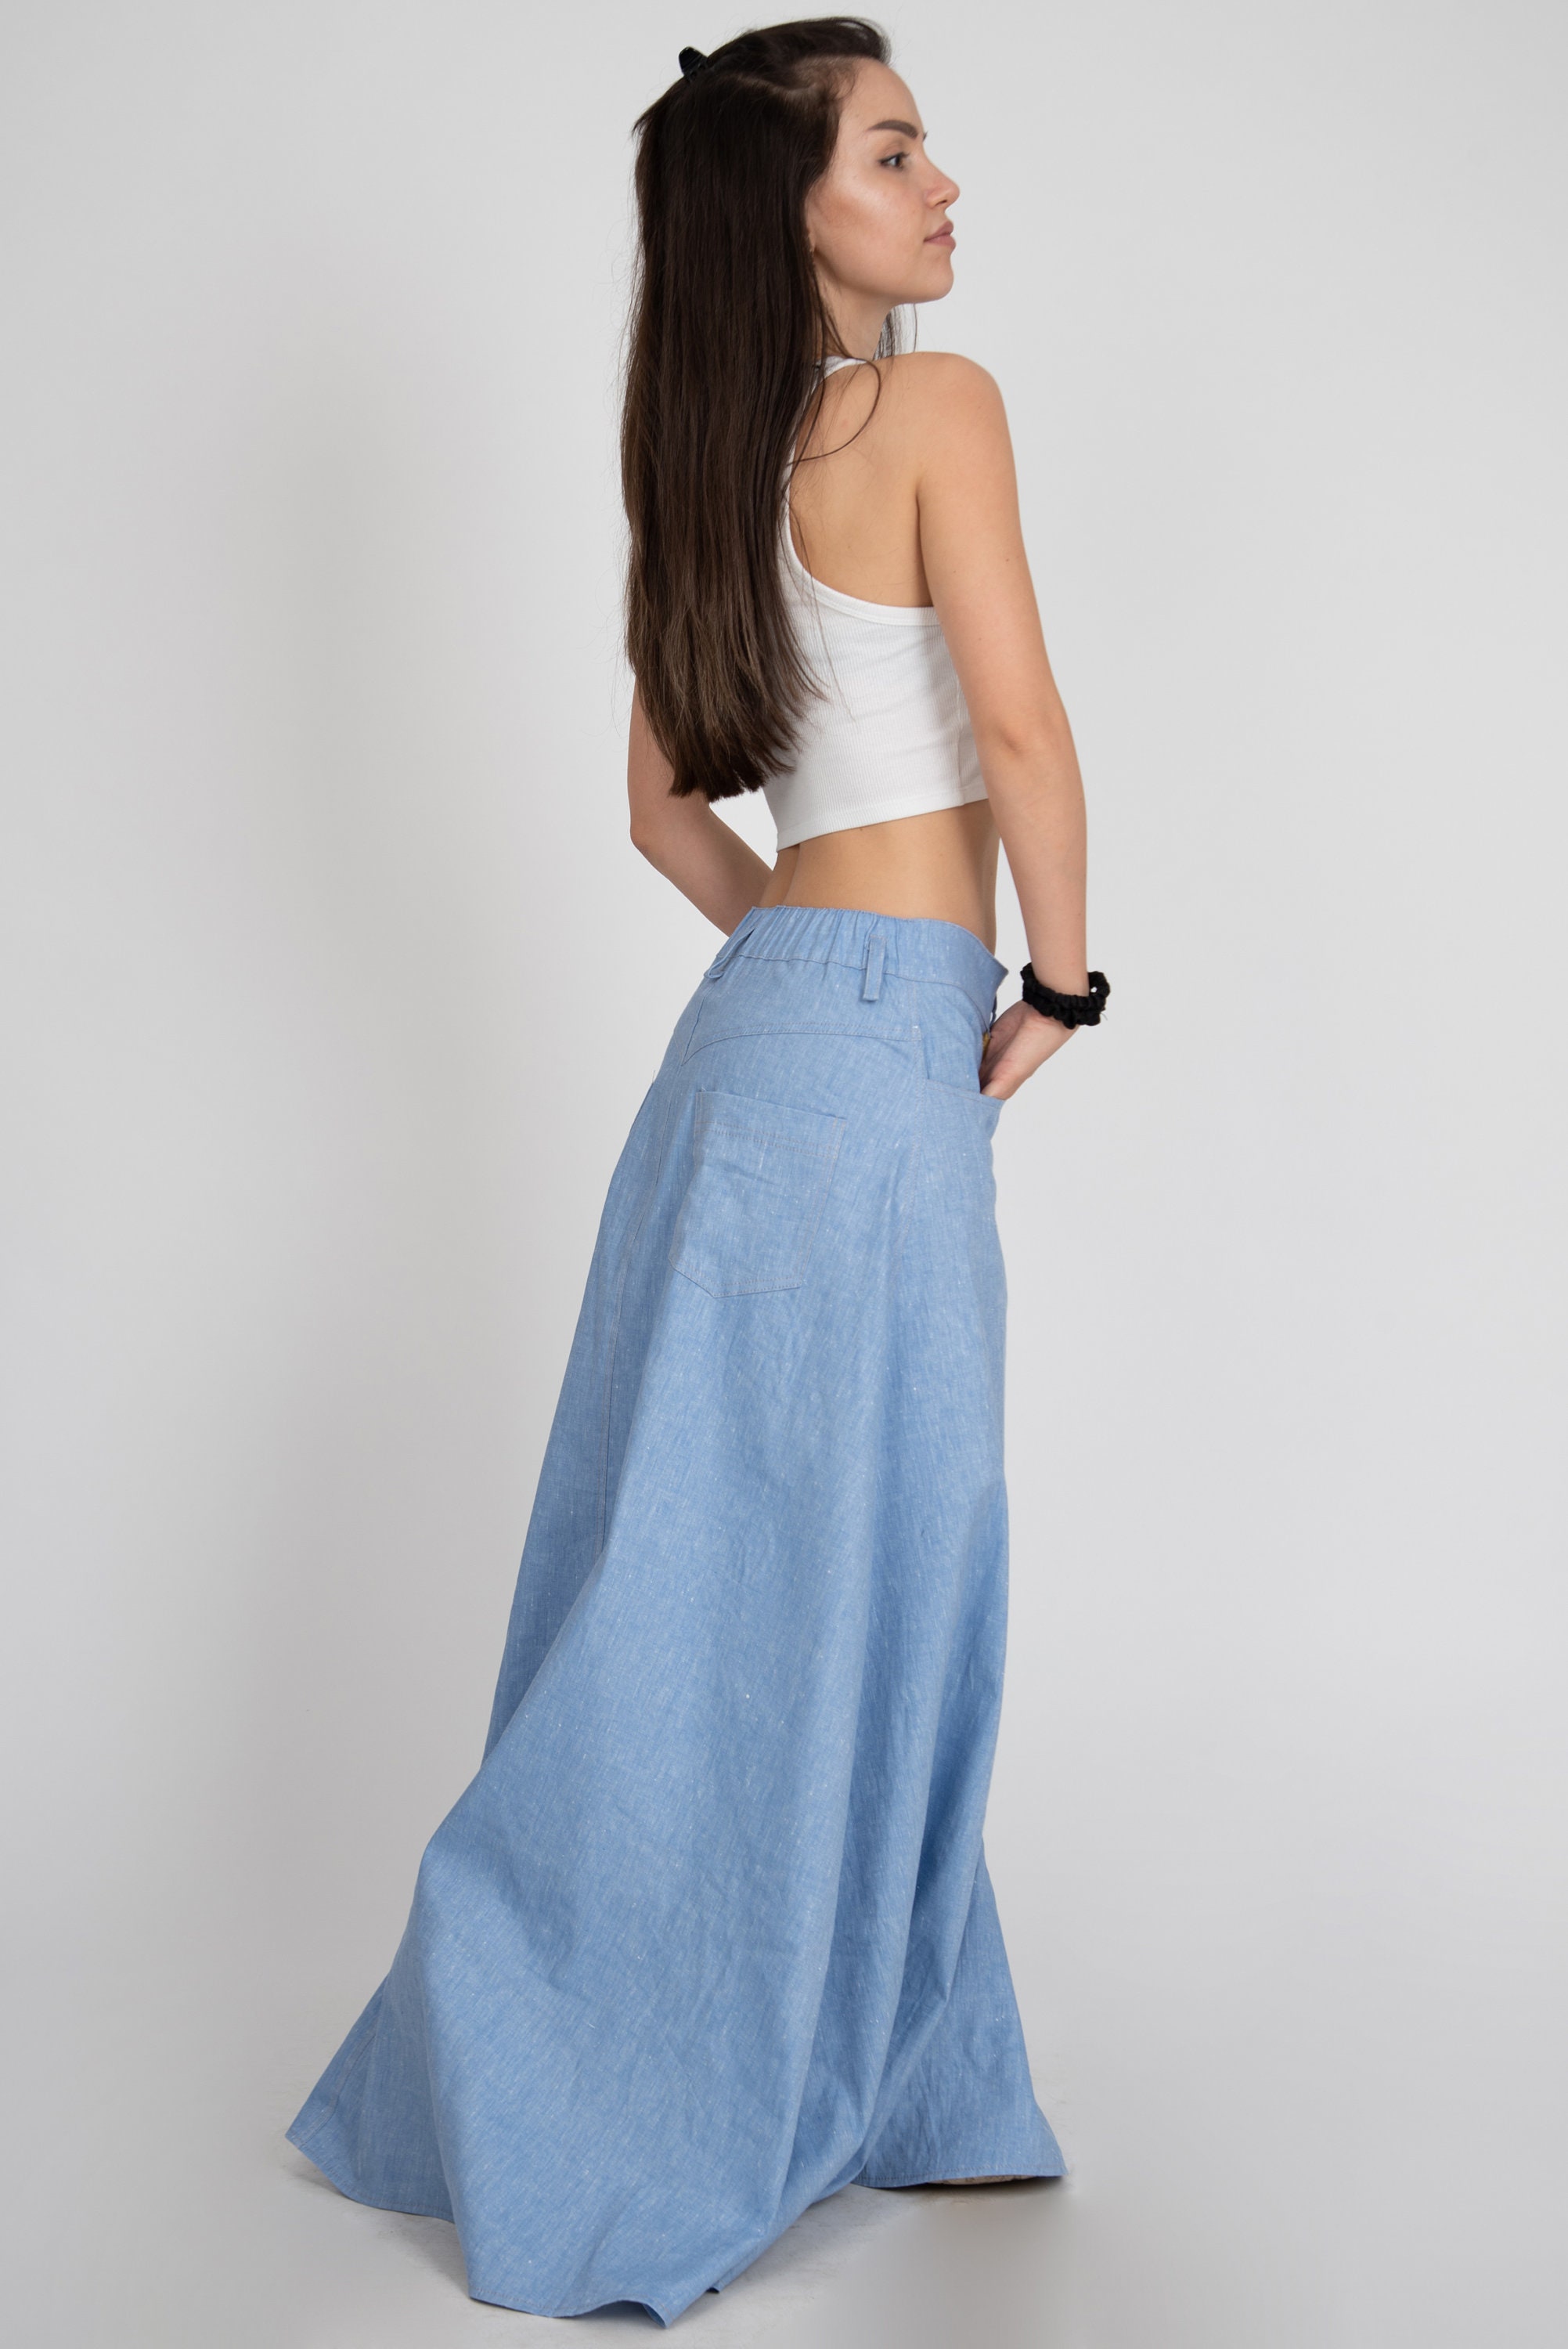 Maxi Skirt/denim Oversized Skirt/jean Skirt/casual Maxi Skirt/blue